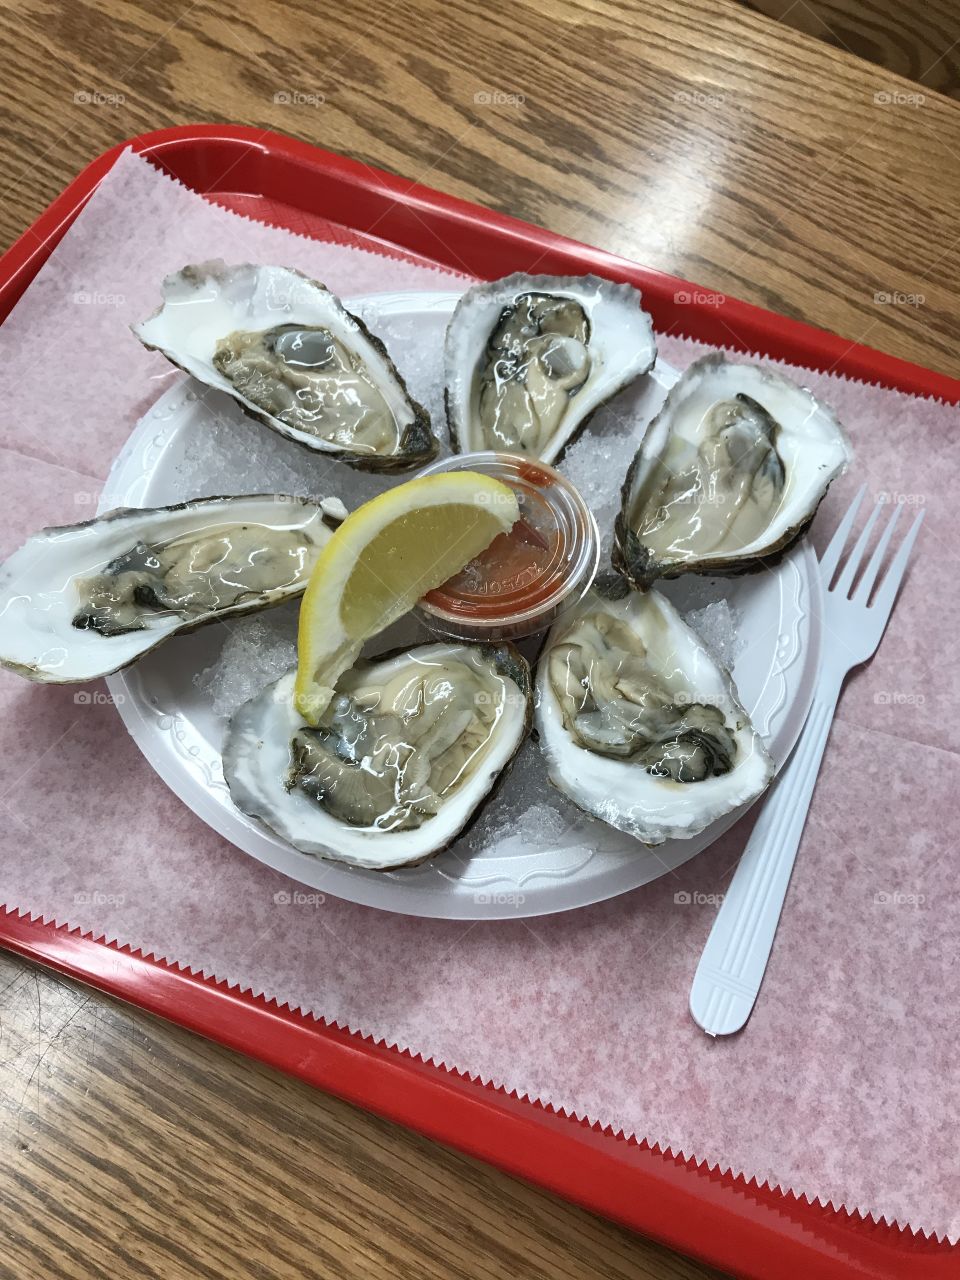 Got oyster?